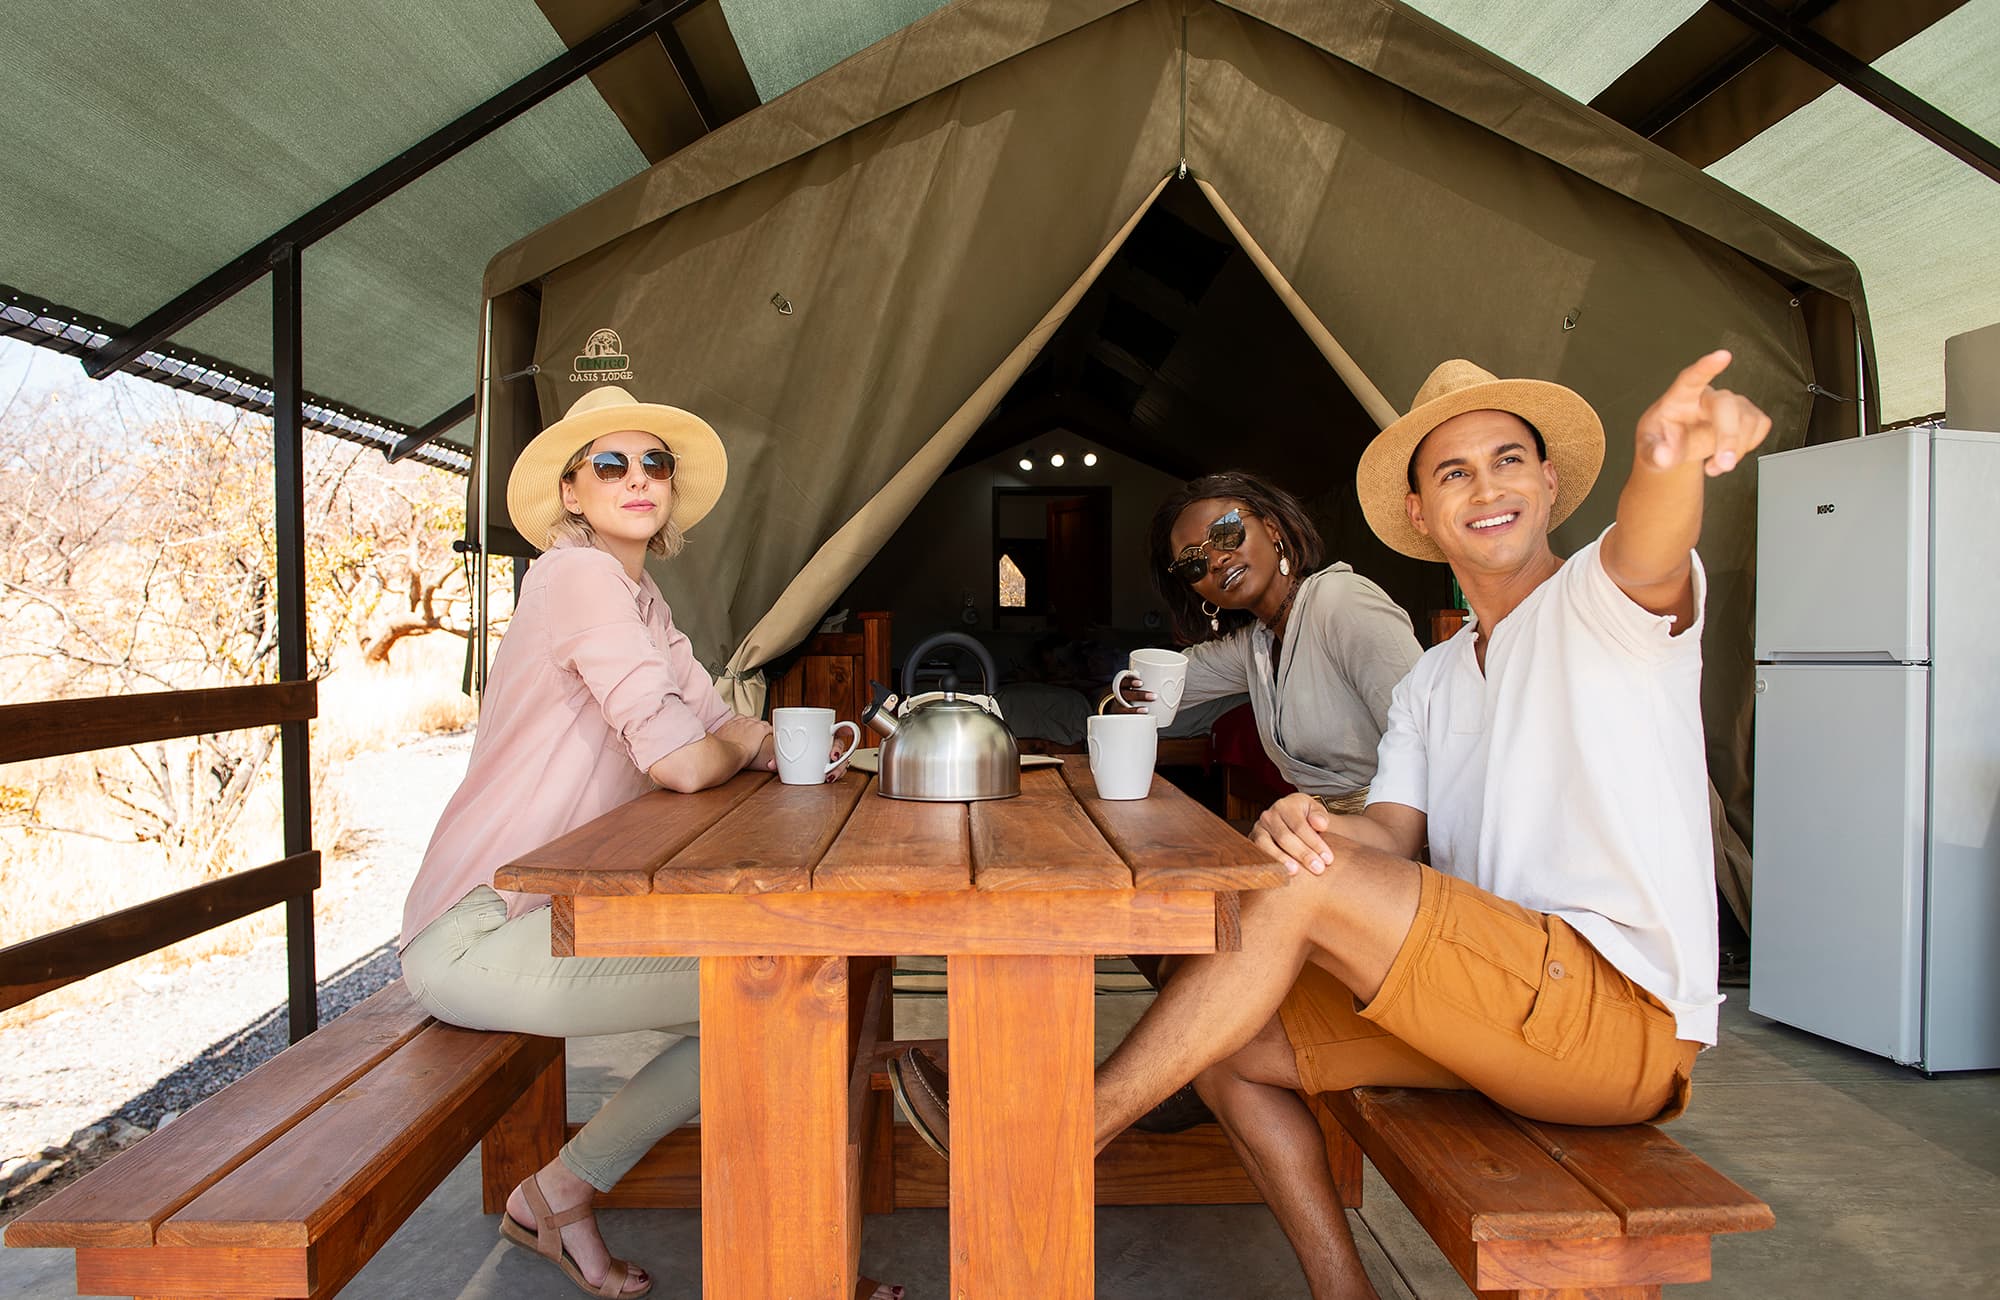 Etosha Safari Camping2go